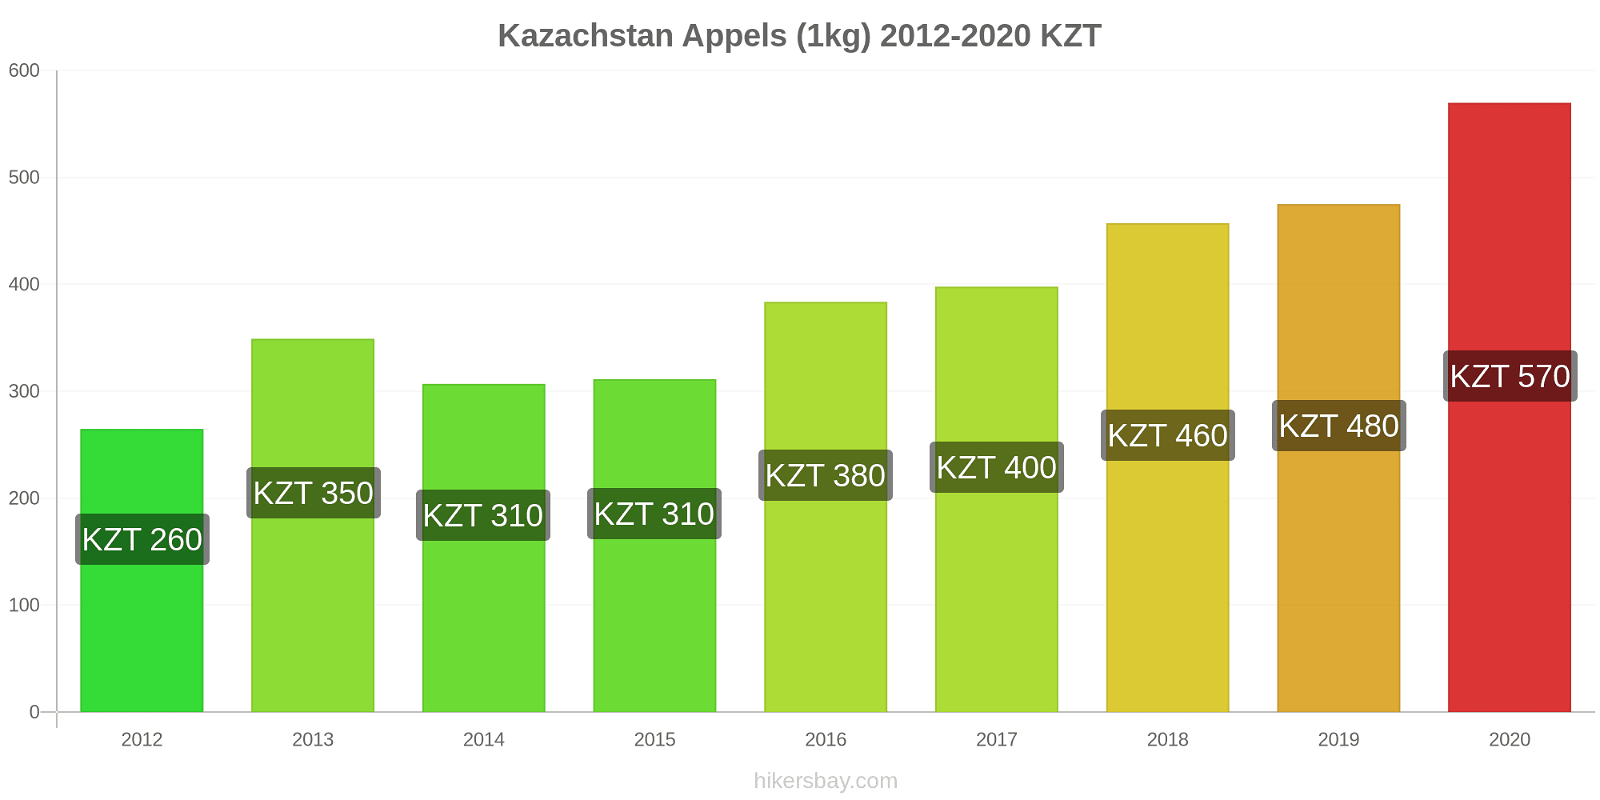 Kazachstan prijswijzigingen Appels (1kg) hikersbay.com